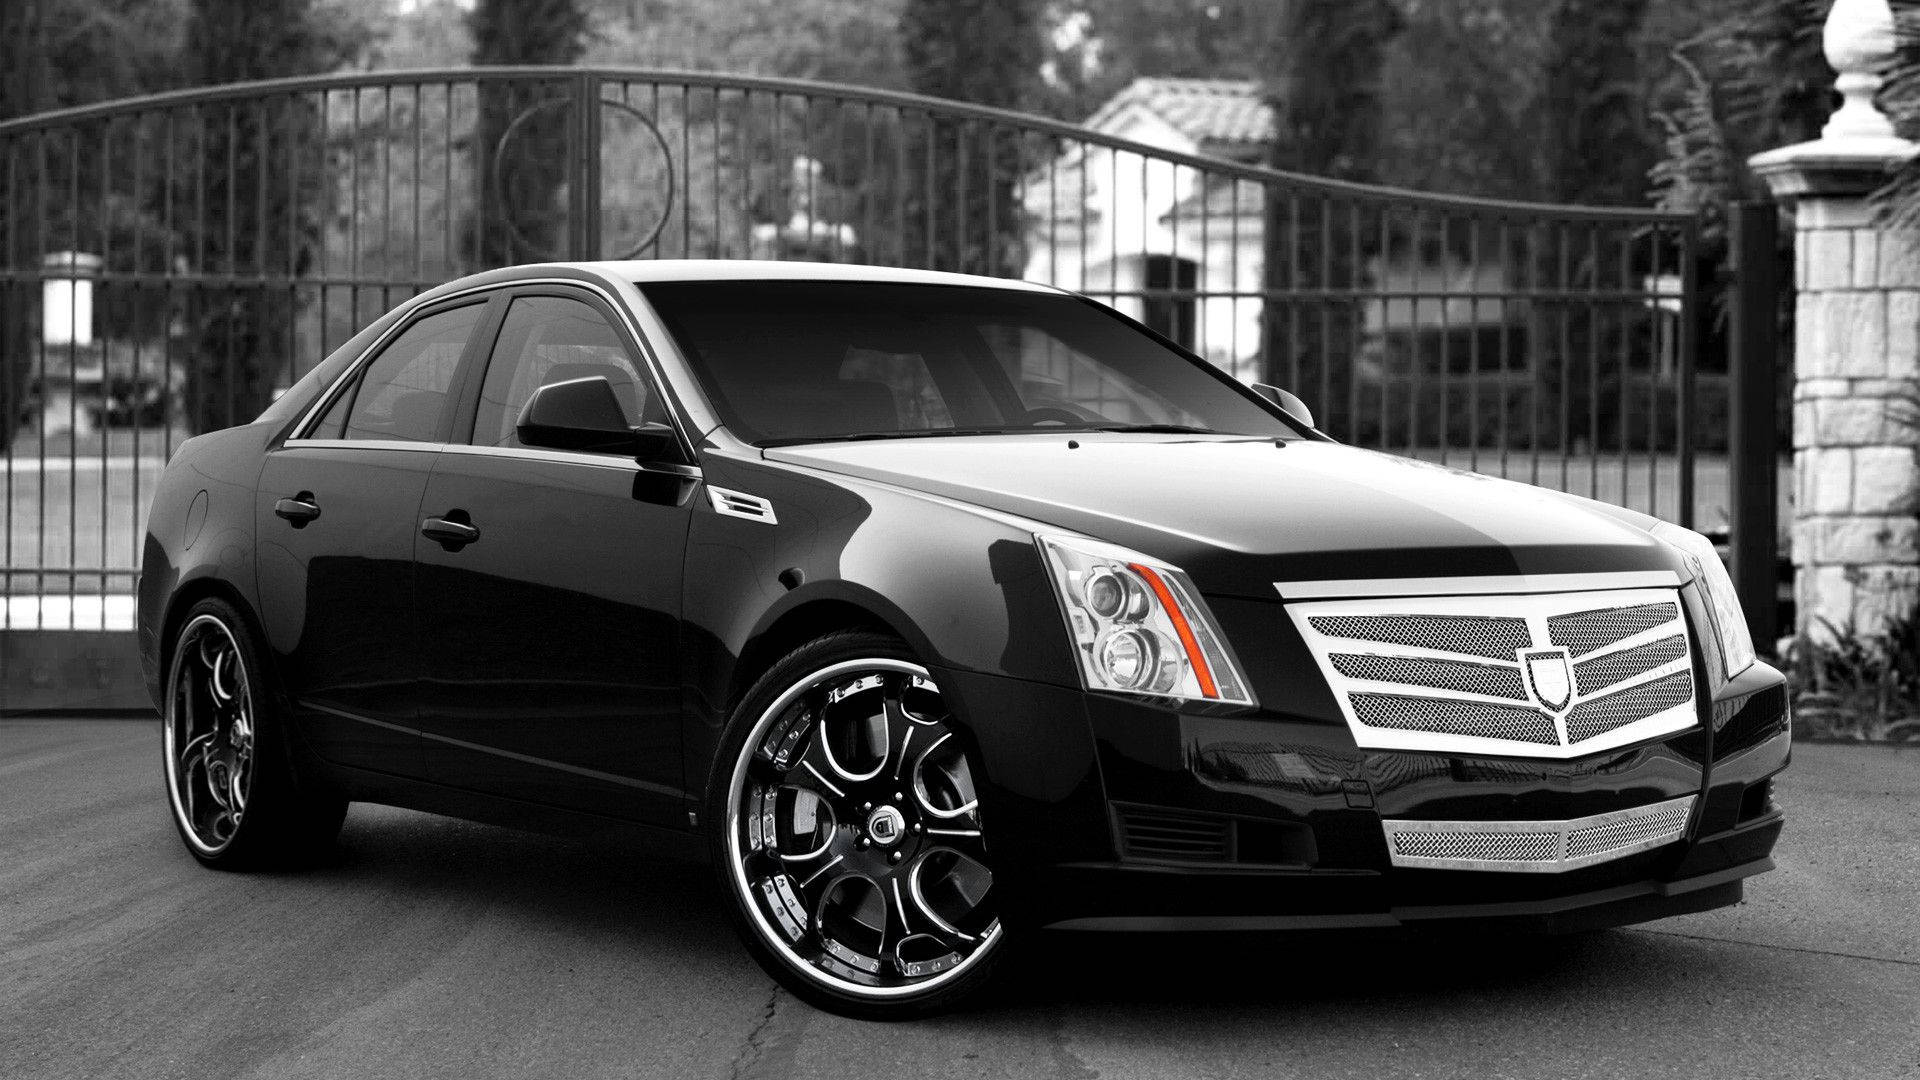 Black Cadillac Cts